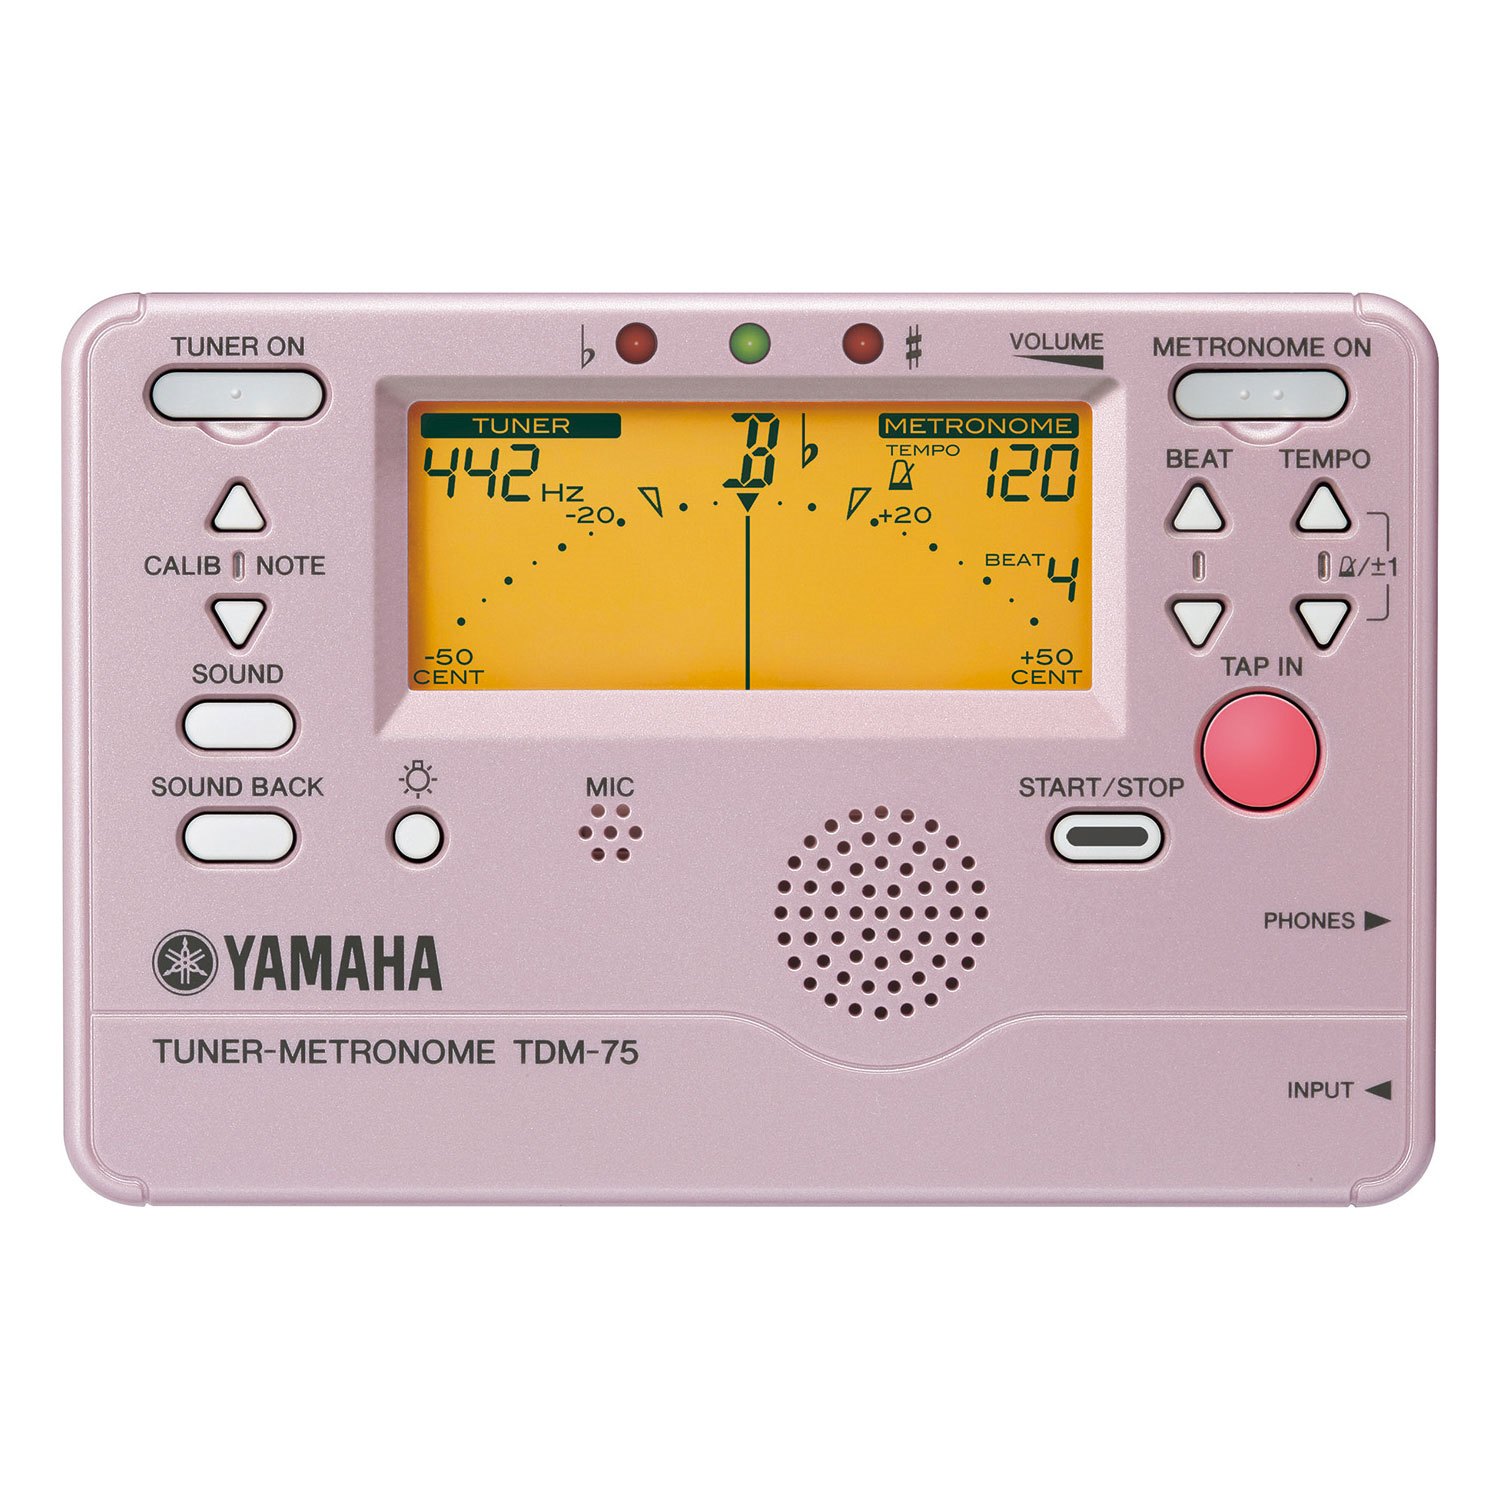 ラッピング無料 YAMAHA TDM-700P ピンク チューナーメトロノーム3 100円